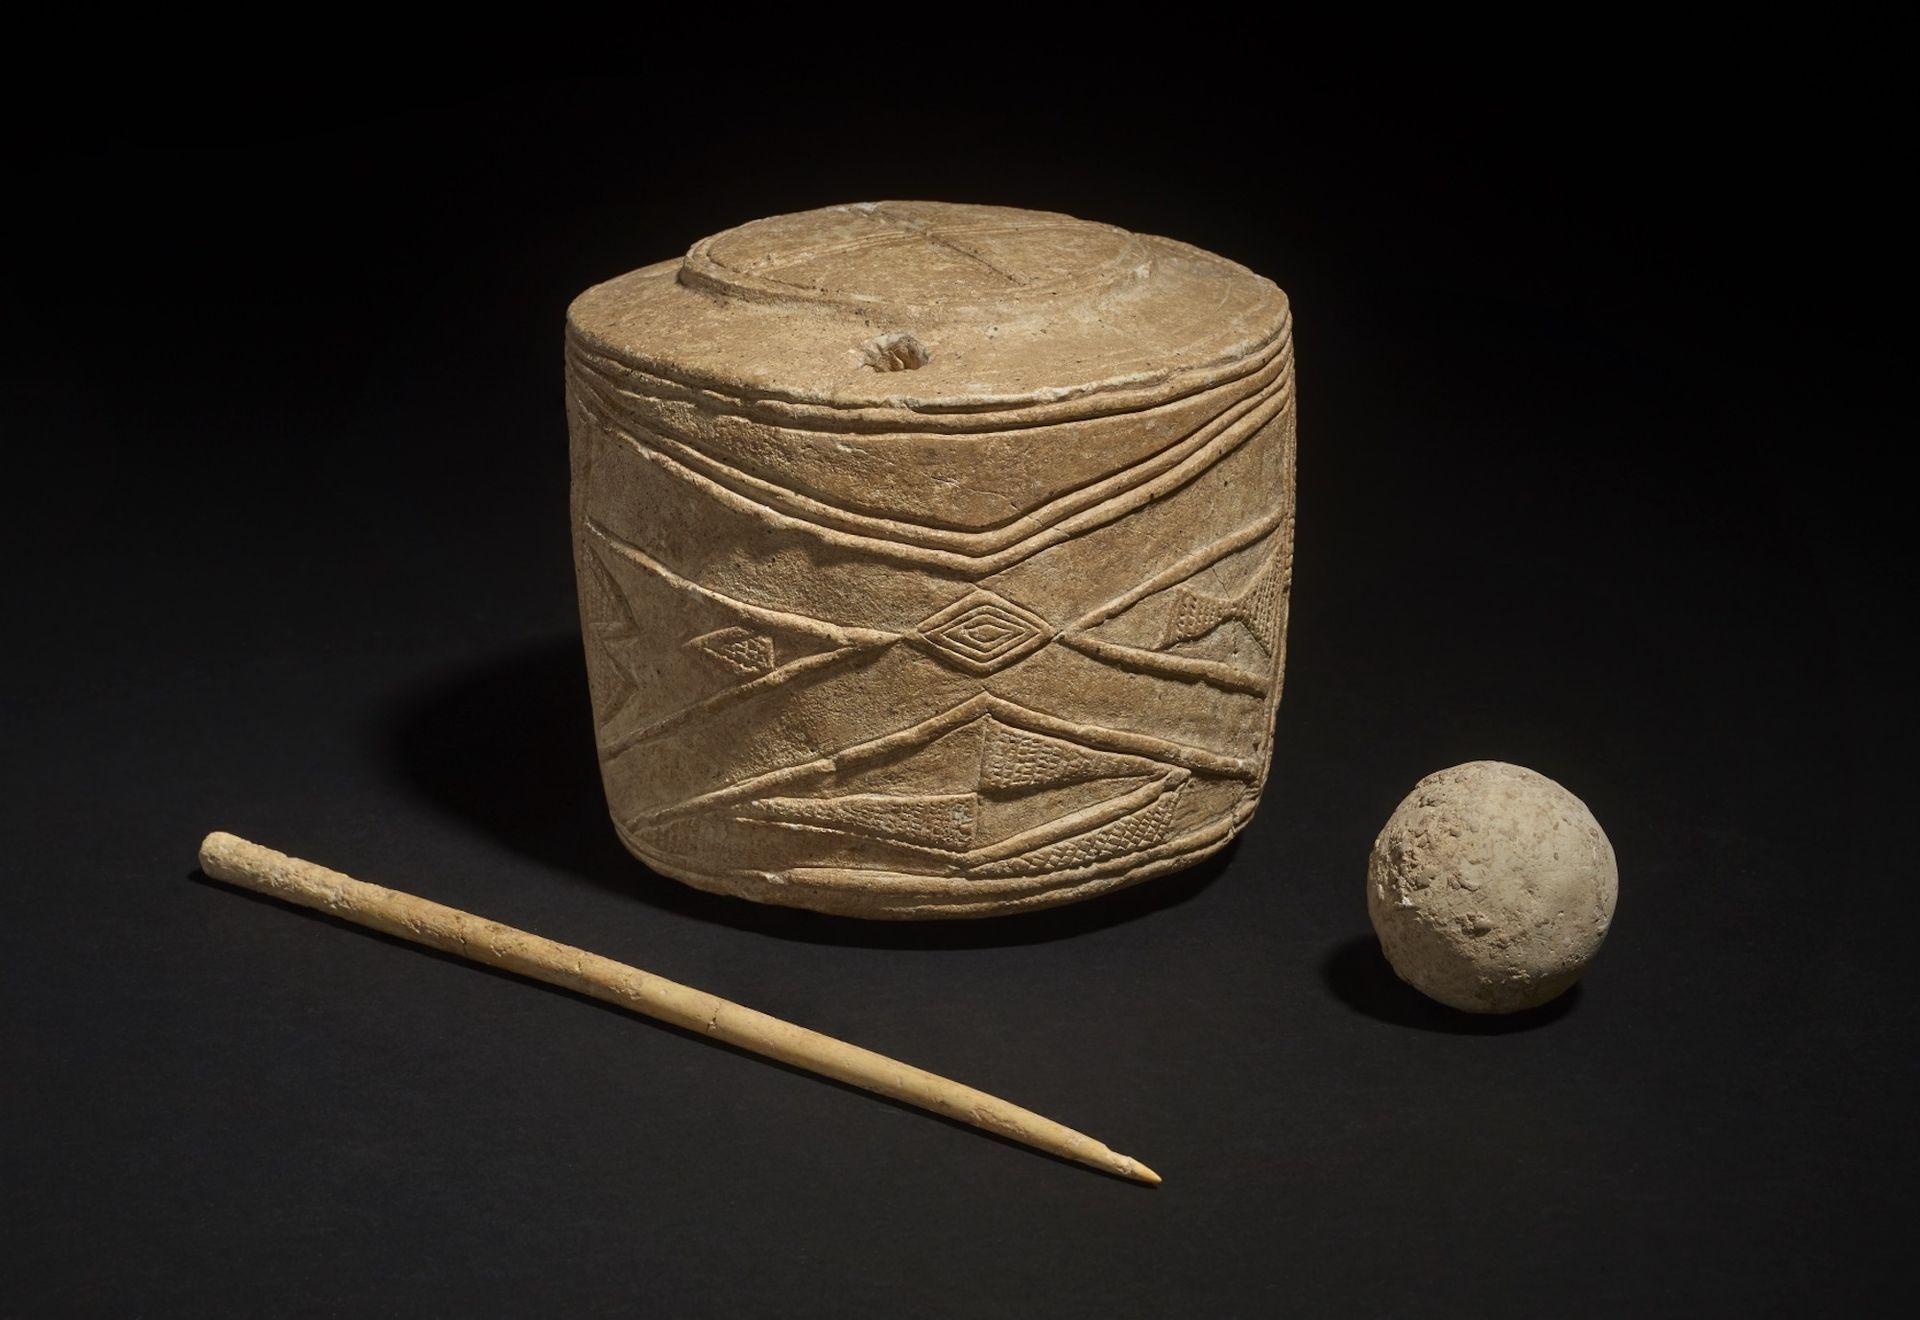 תוף הגיר שנמצא בברטון אגנס, כדור מגיר וסיכת עצם (בין 2890 לפני הספירה עד 3005 לפני הספירה)

©הנאמנים של המוזיאון הבריטי